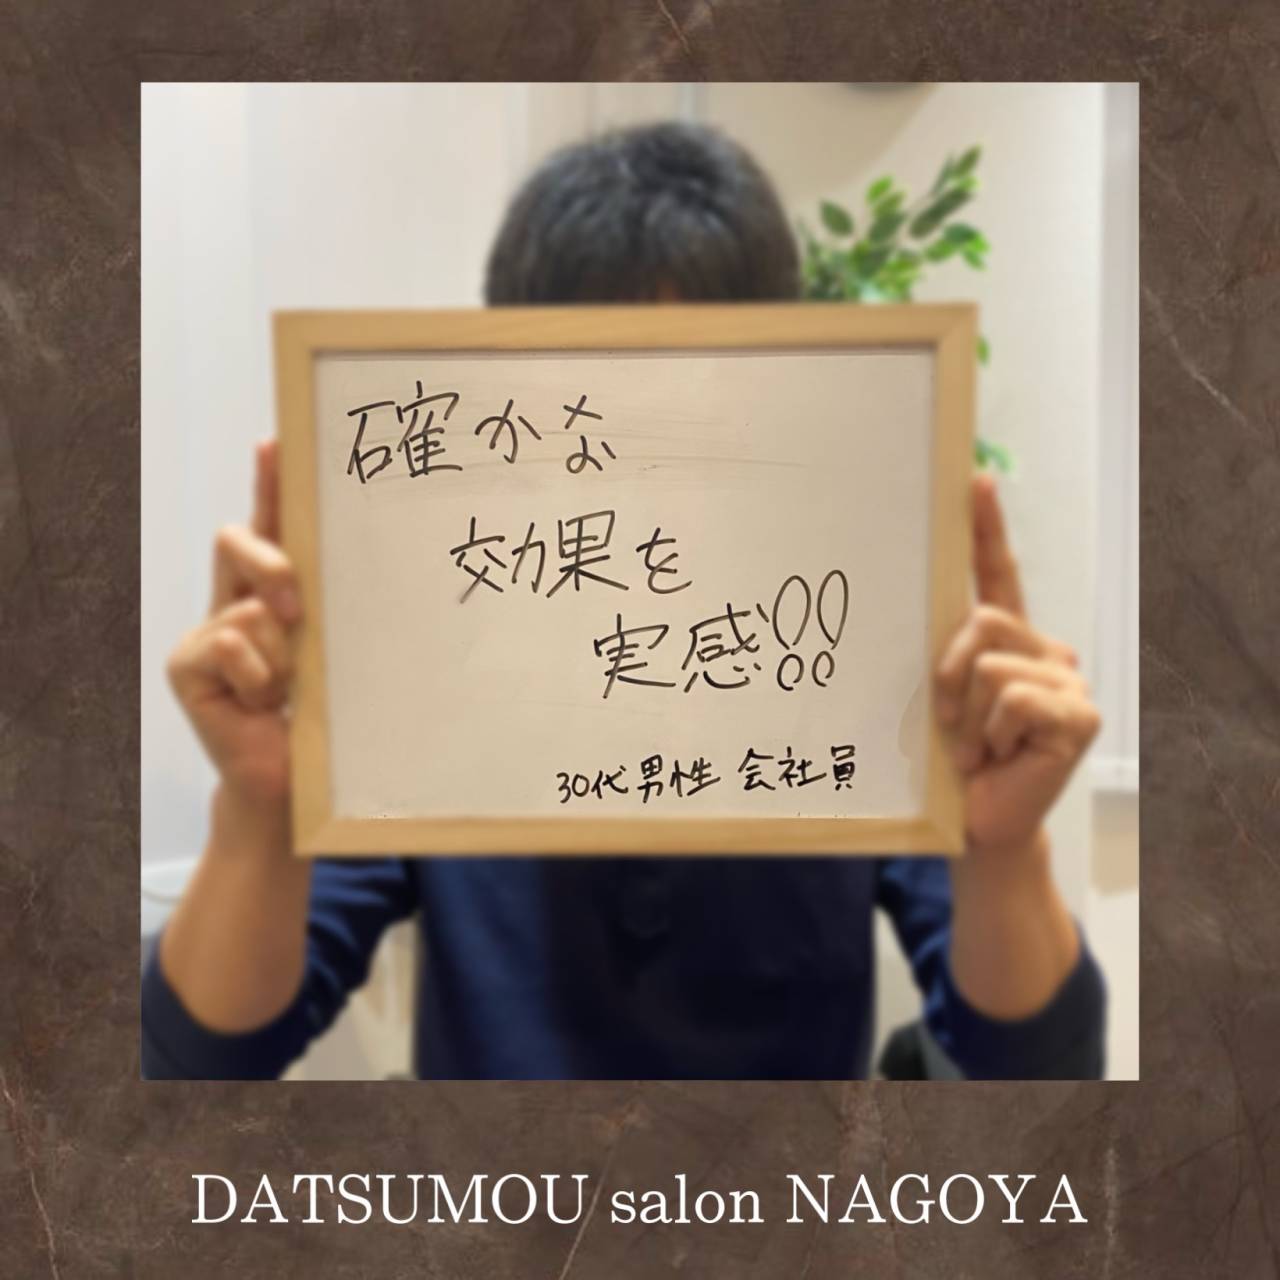 メンズ脱毛DATSUMOU salon NAGOYAにご来店頂いているお客様の声をご紹介！